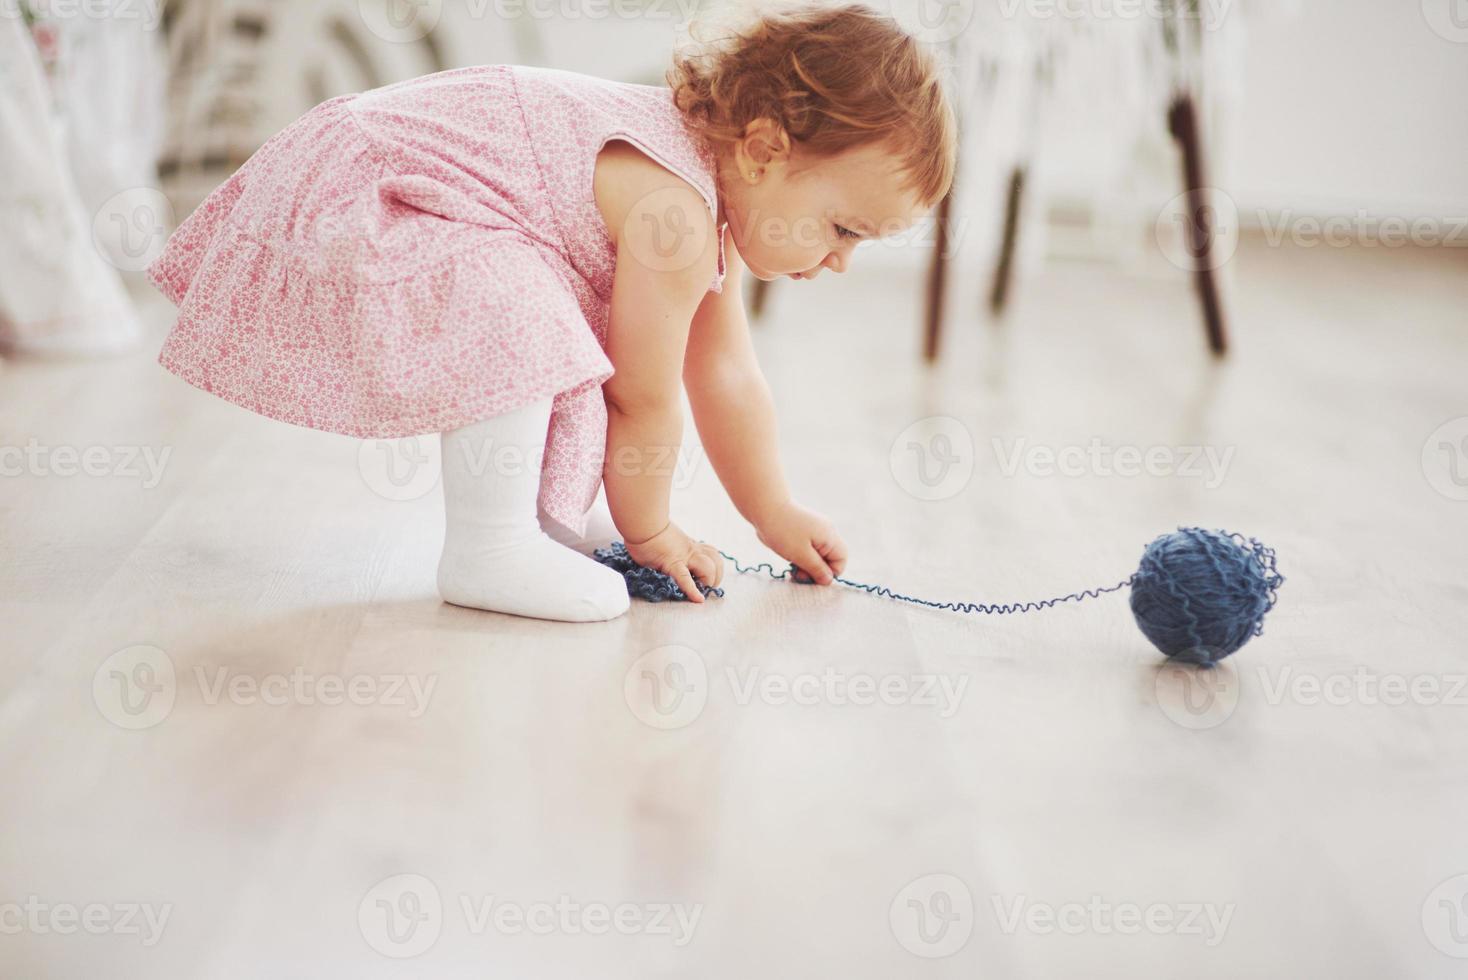 conceito de infância. menina com vestido bonito brincar com fios coloridos. quarto infantil branco vintage foto